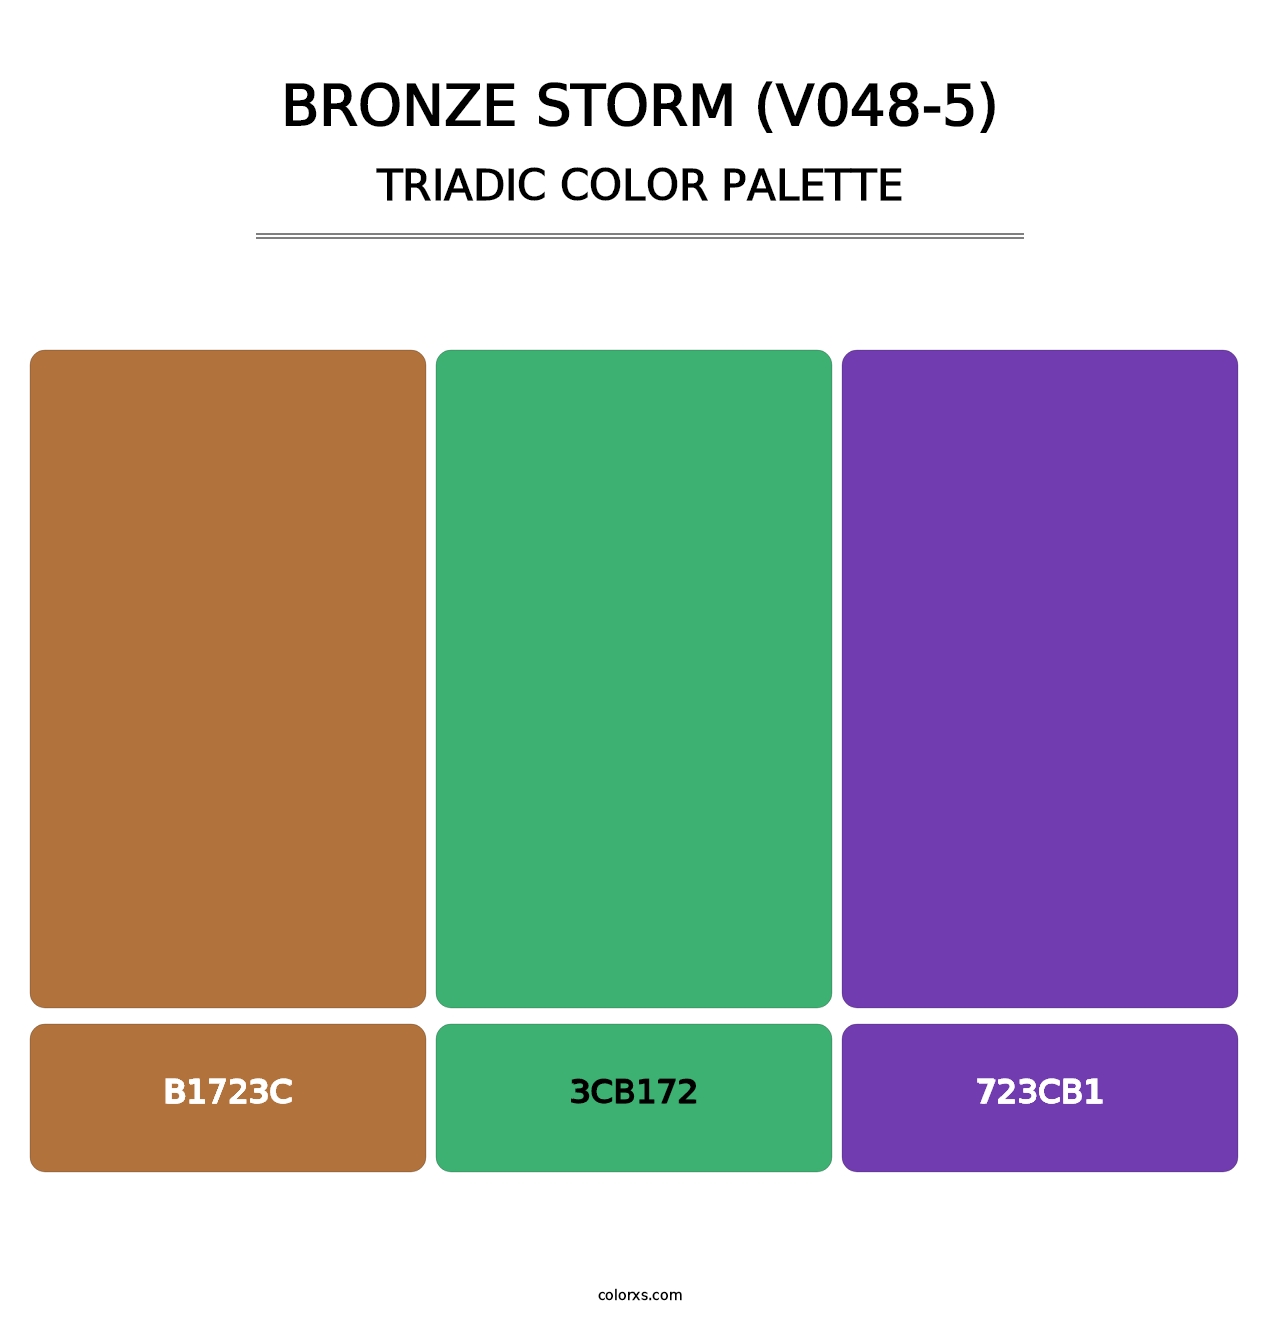 Bronze Storm (V048-5) - Triadic Color Palette